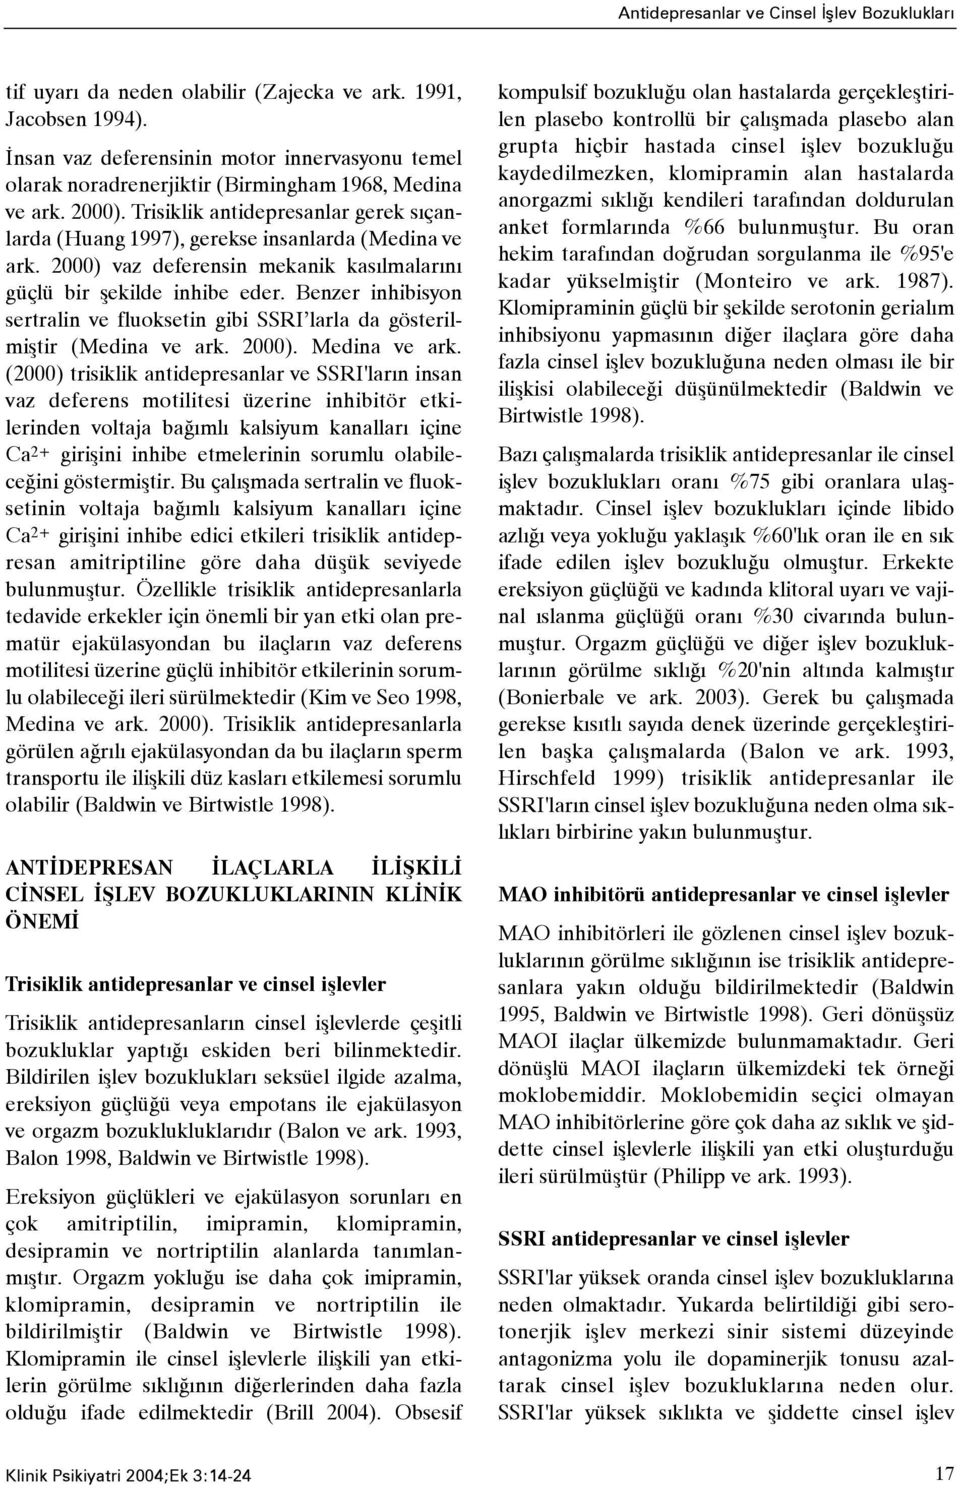 Benzer inhibisyon sertralin ve fluoksetin gibi SSRI larla da gösterilmiþtir (Medina ve ark. 2000). Medina ve ark.